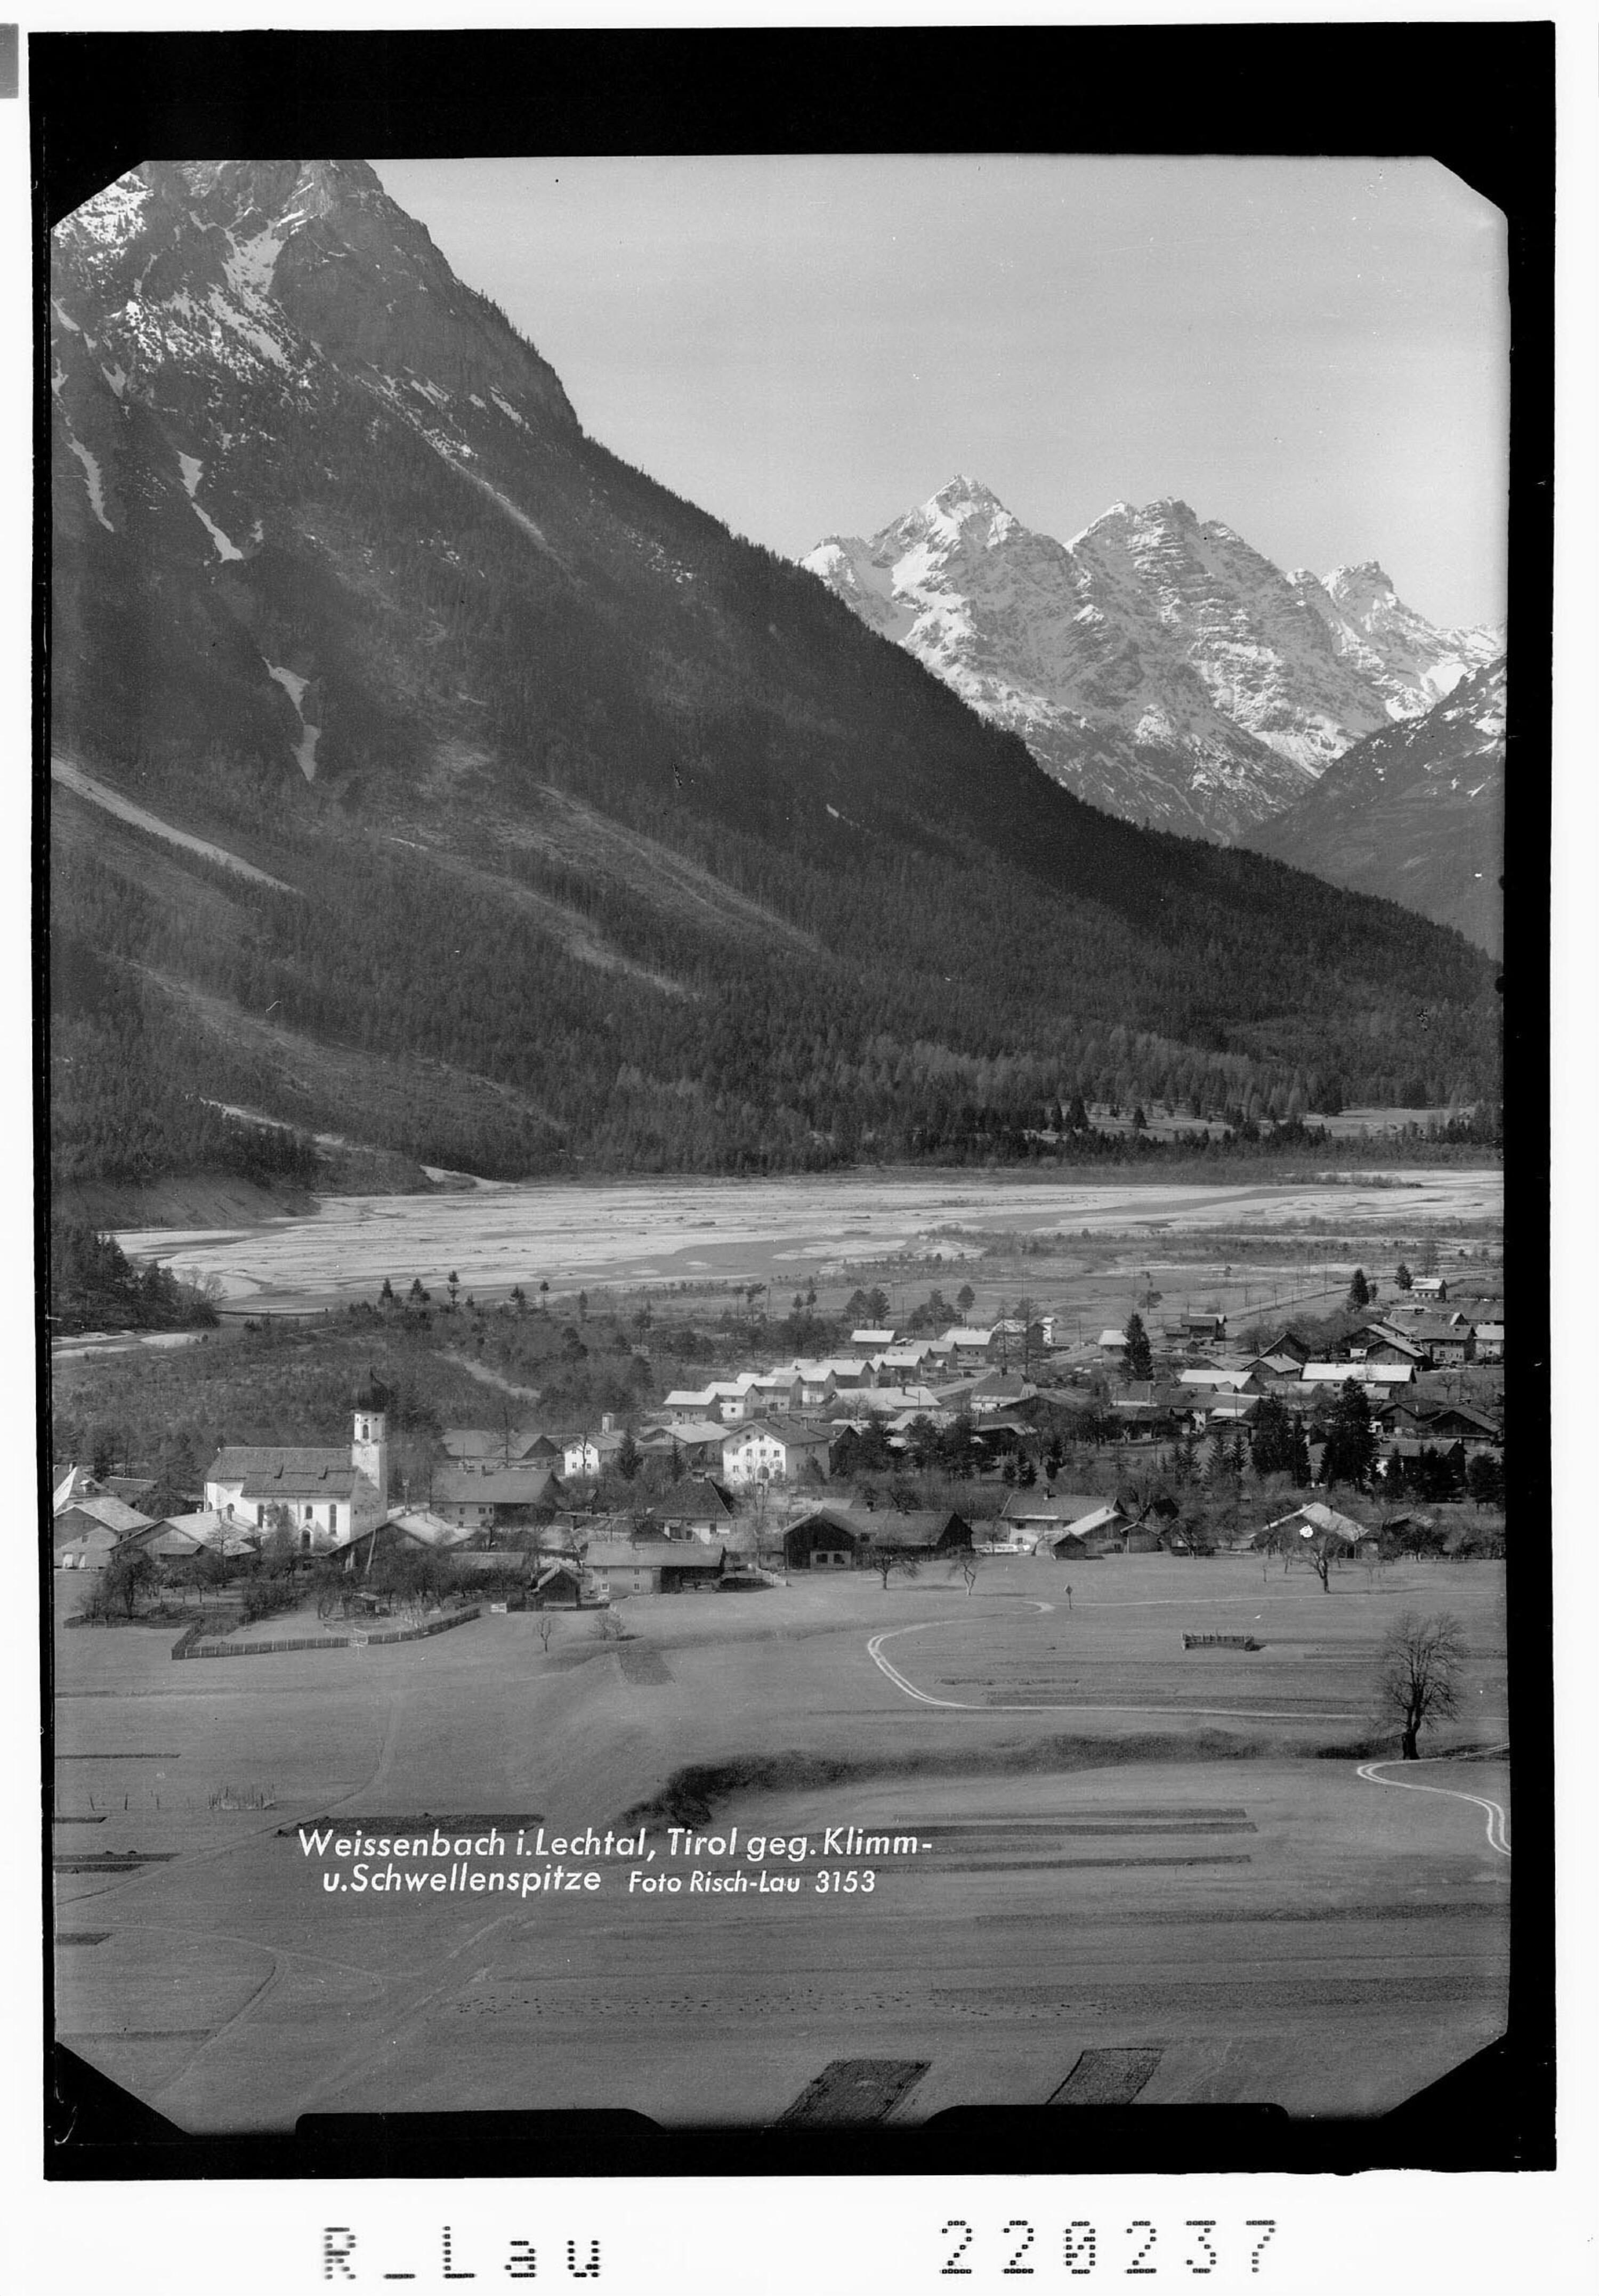 Weissenbach im Lechtal in Tirol gegen Klimmspitze und Schwellenspitze></div>


    <hr>
    <div class=